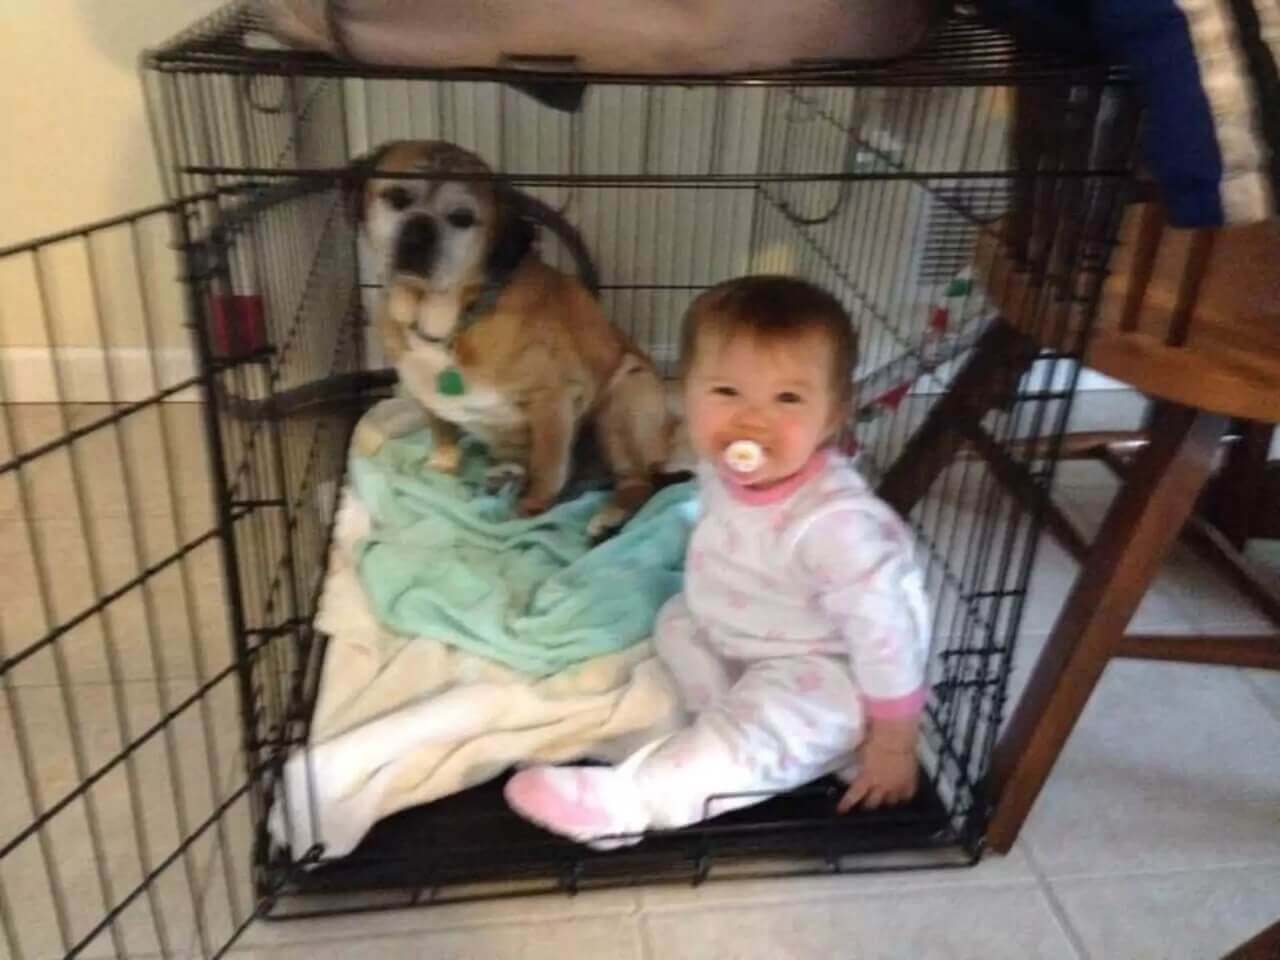 Bebê e cachorro